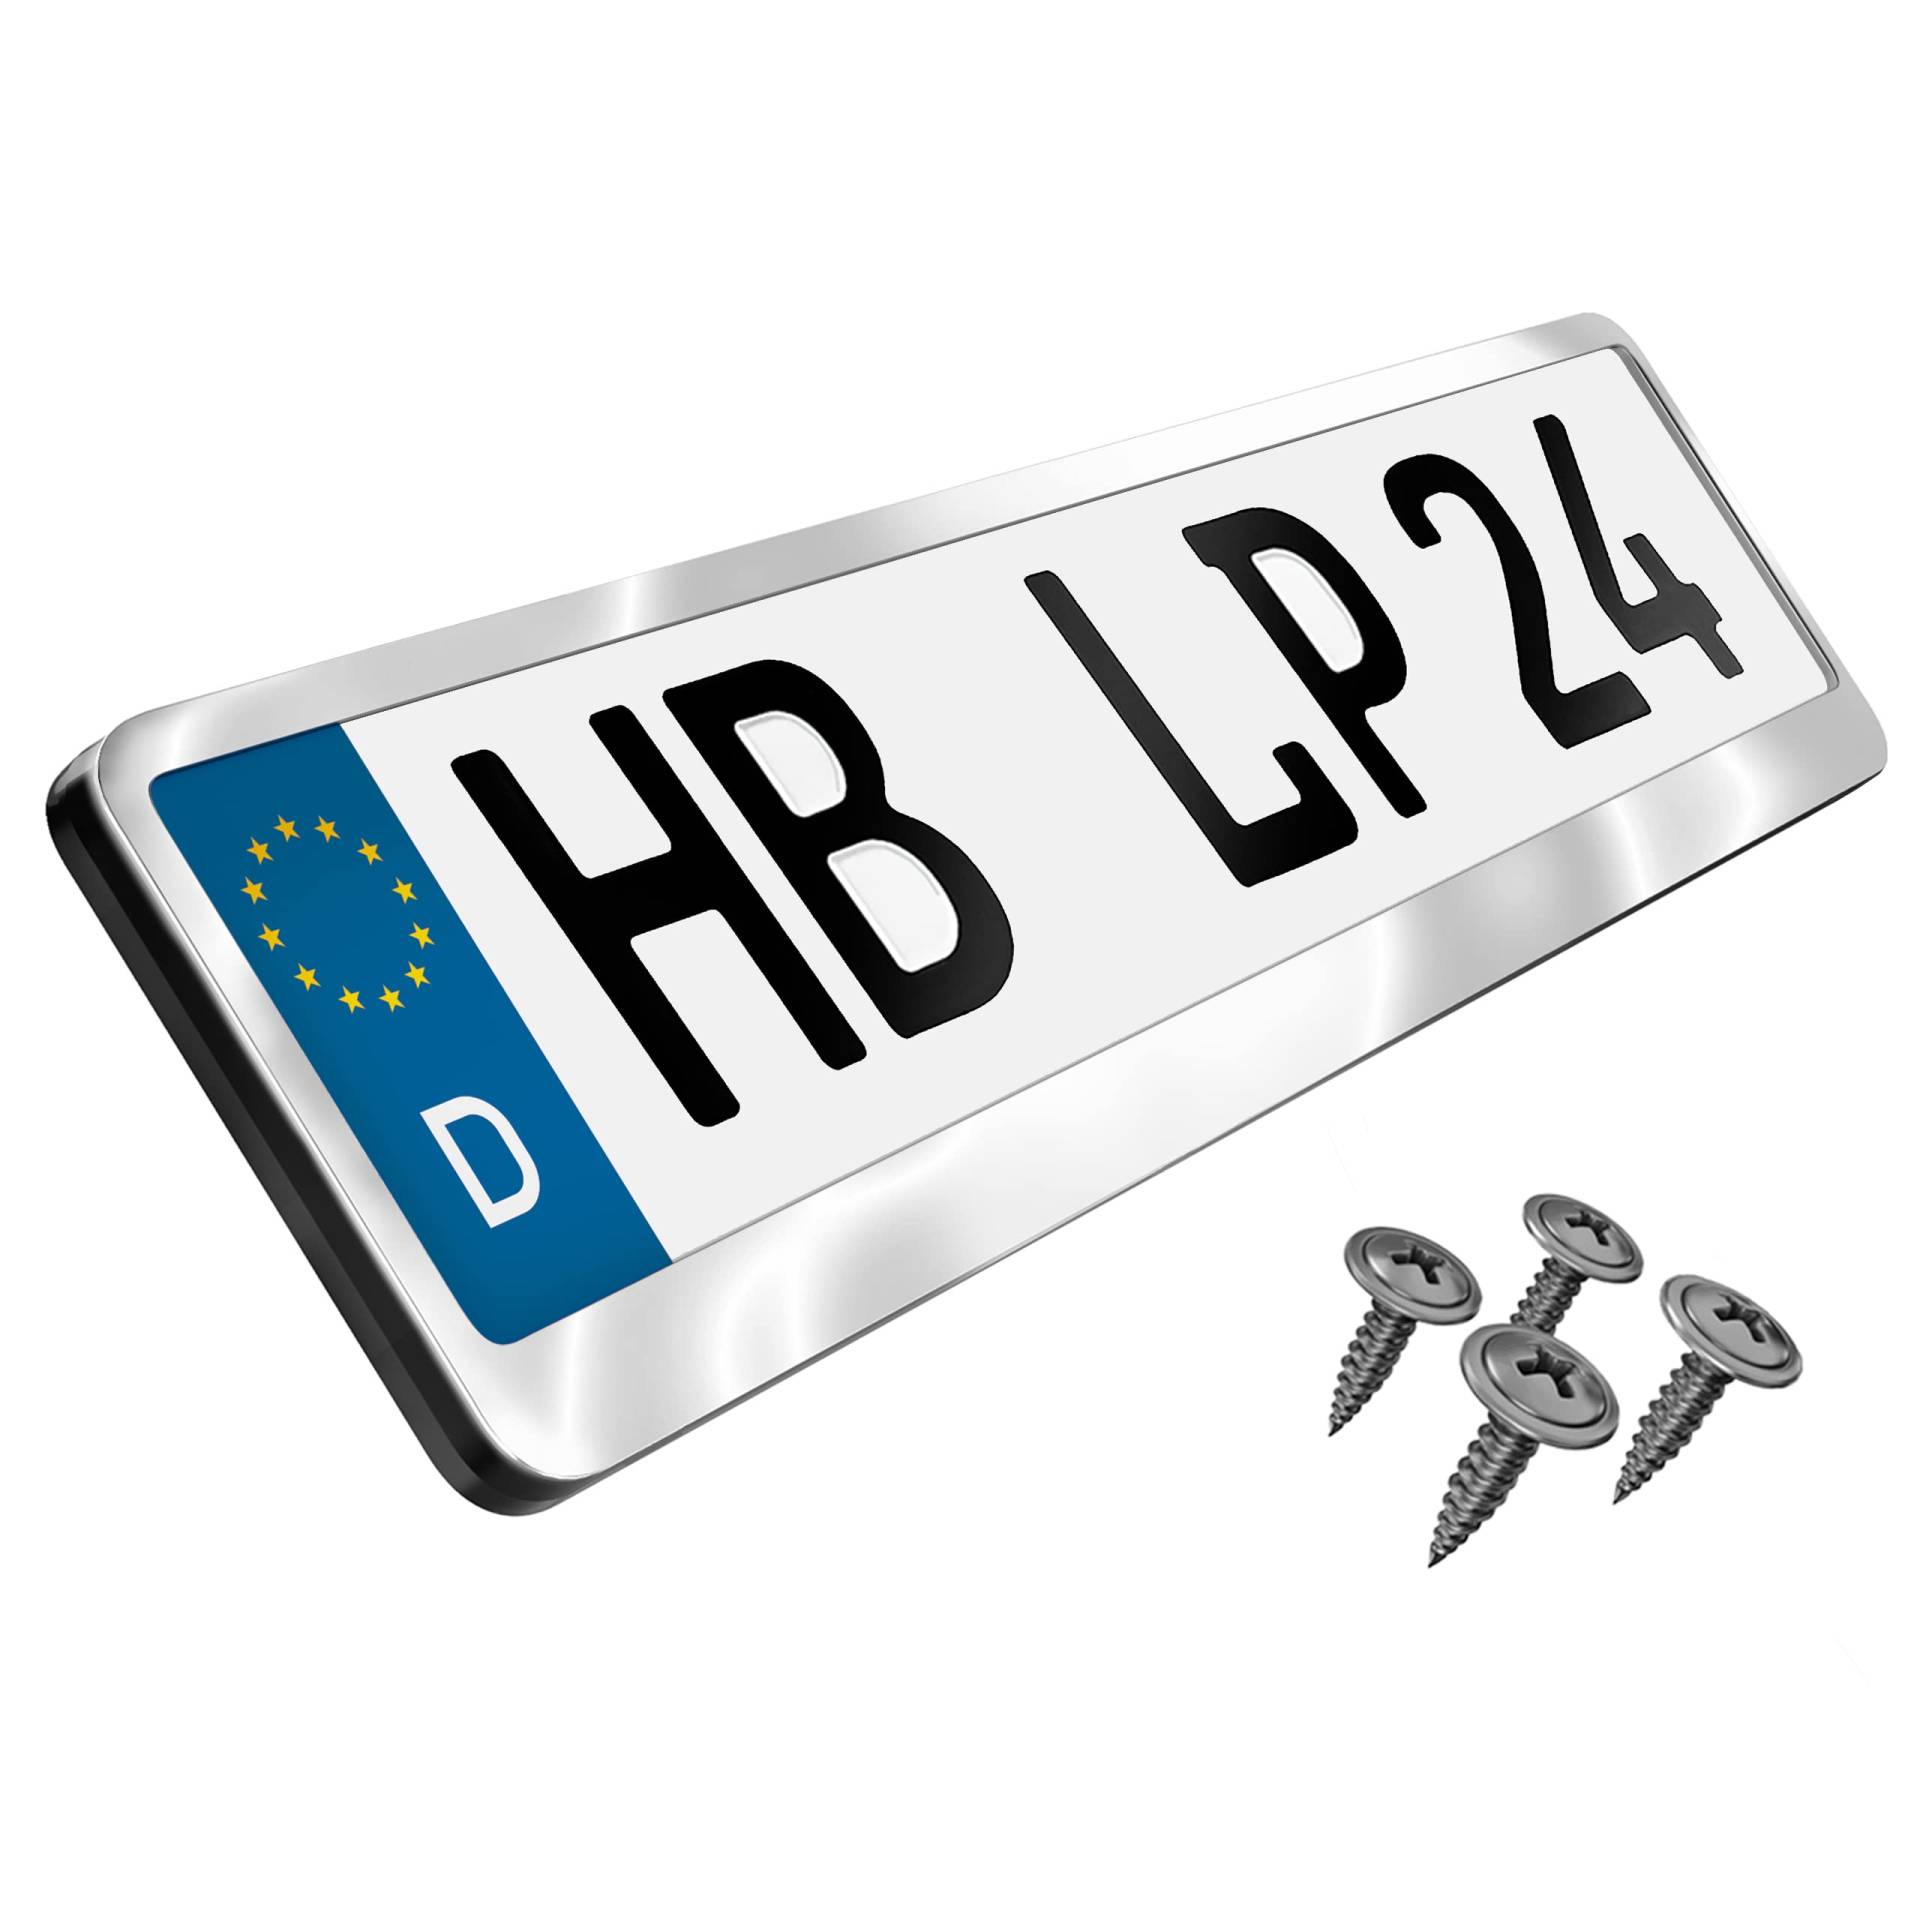 L&P Premium Kennzeichenhalter Auto Nummernschildhalter Edelstahl INOX V2A Kennzeichenverstärker Kennzeichenhalterung Nummernschildhalterung Verstärker Kennzeichen Nummernschild (Edelstahl poliert) von L & P Car Design